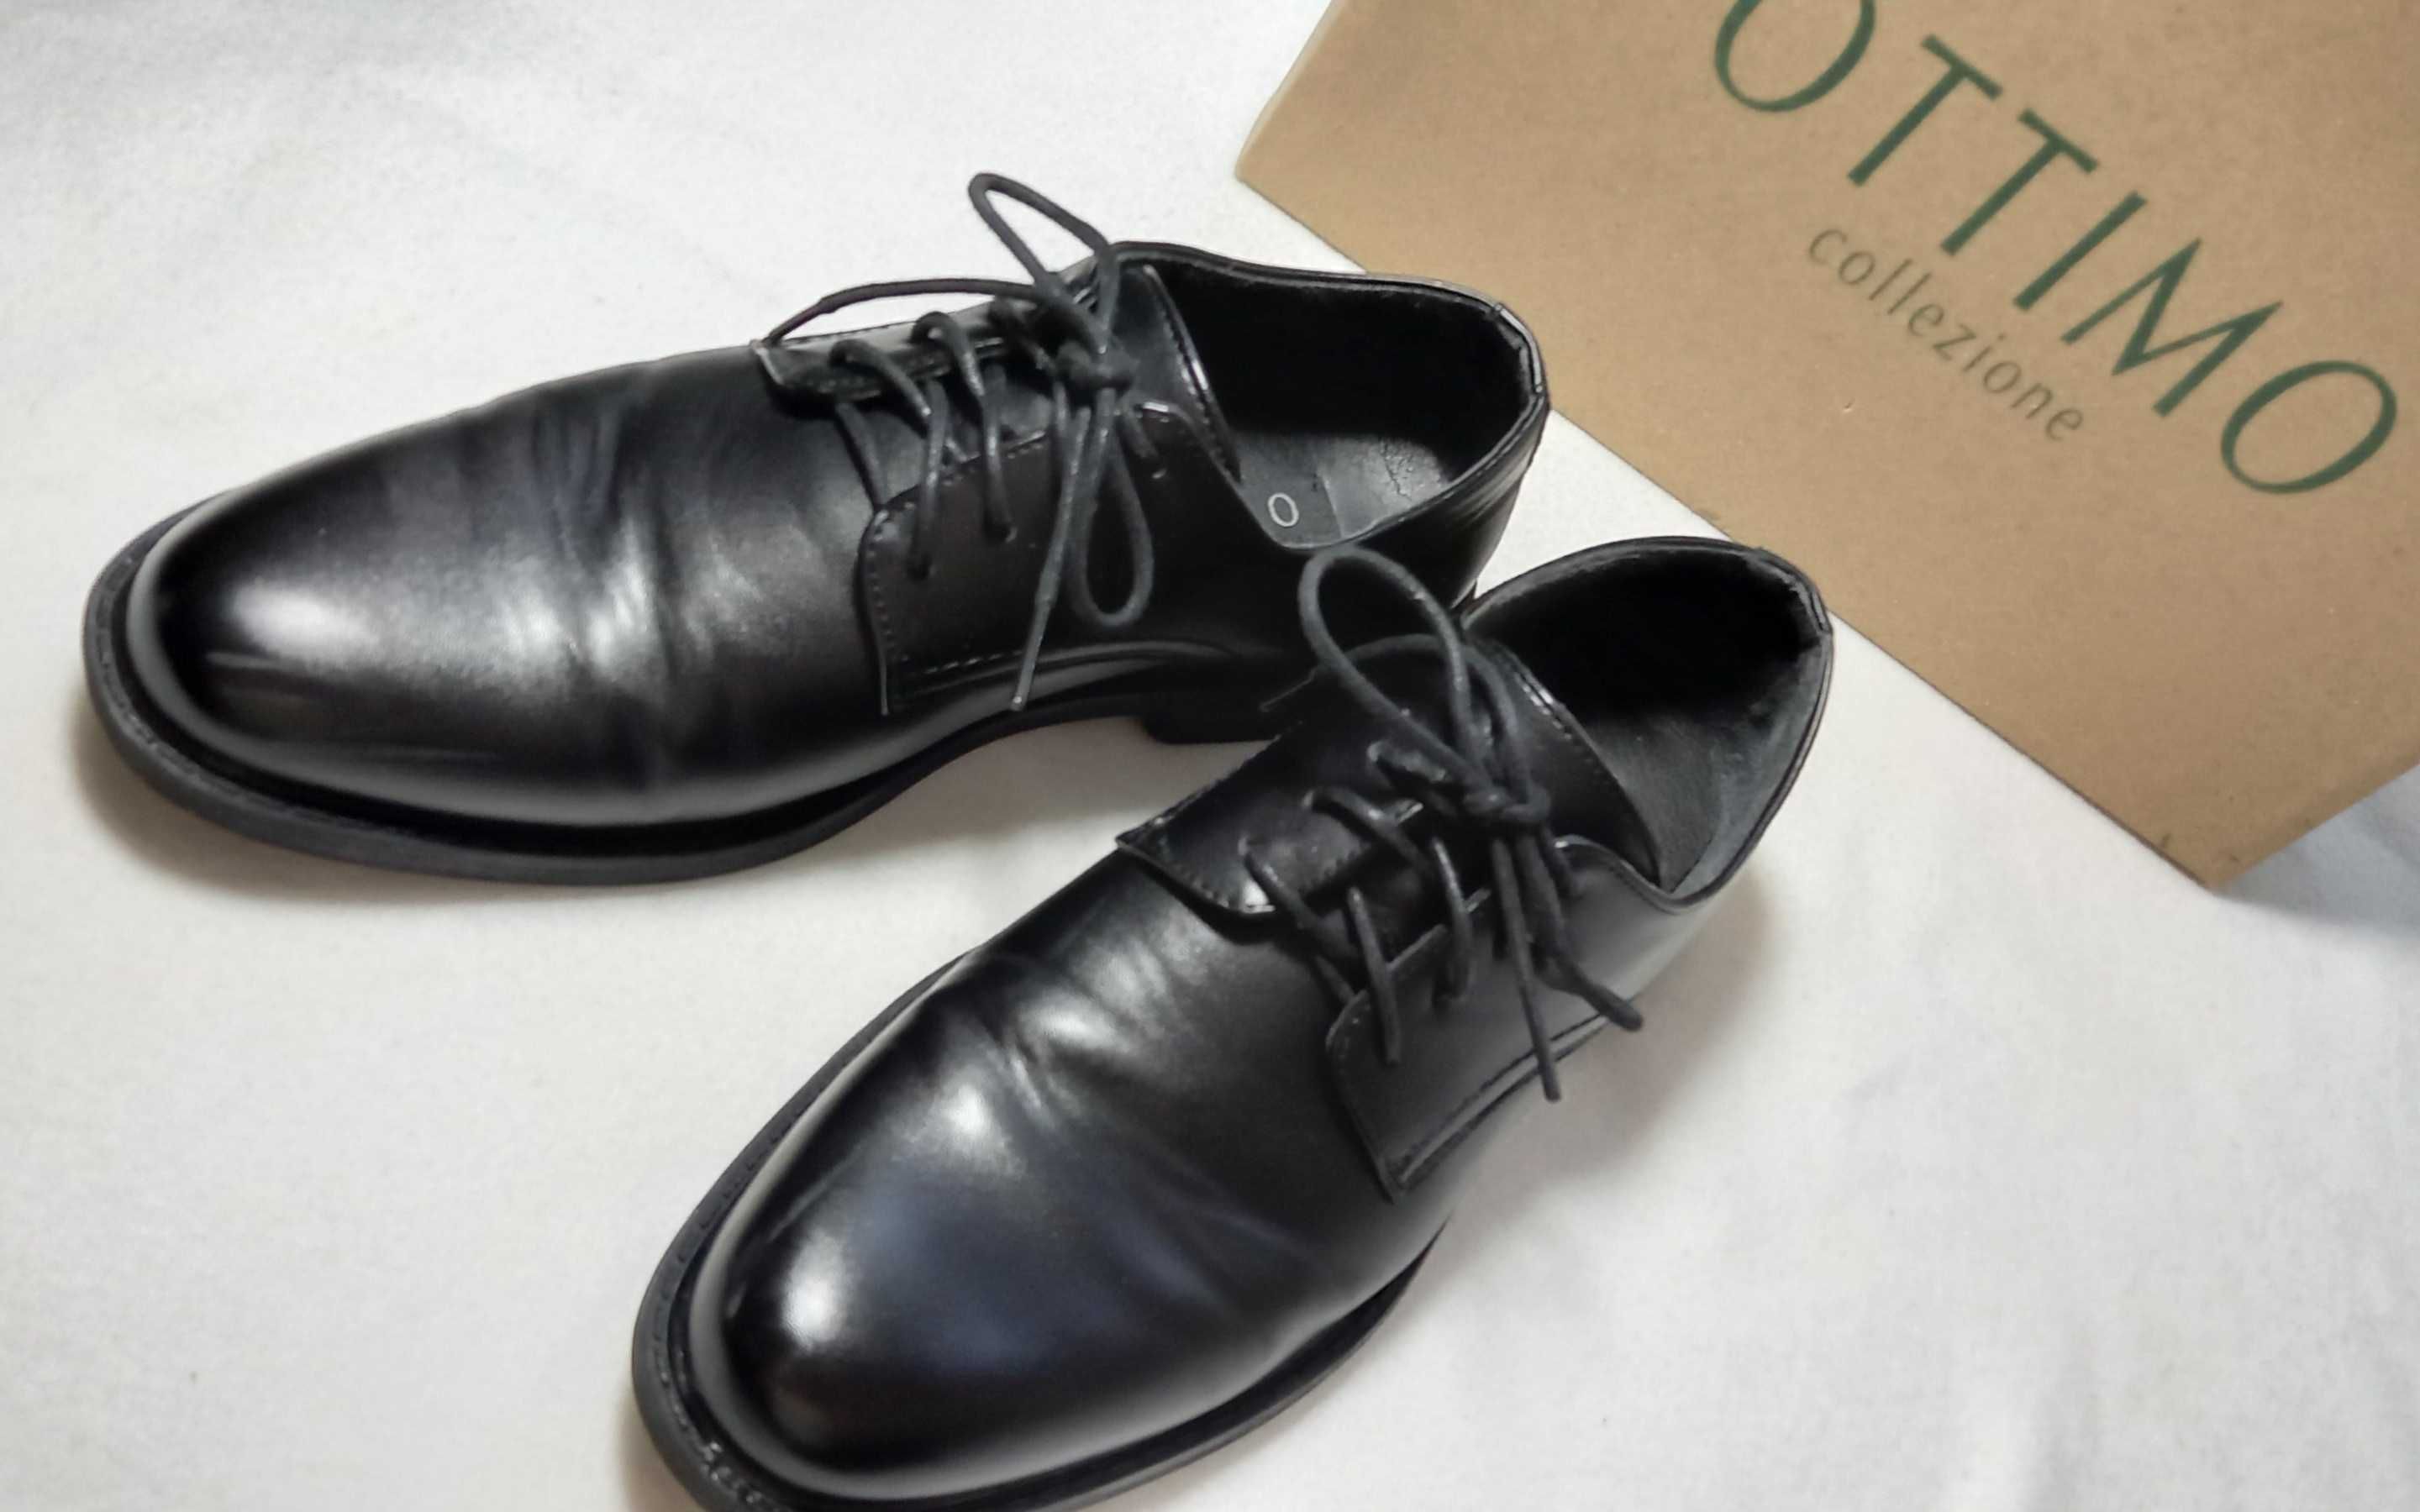 CCC OTTIMO rozm. 37 czarne galowe buty eleganckie